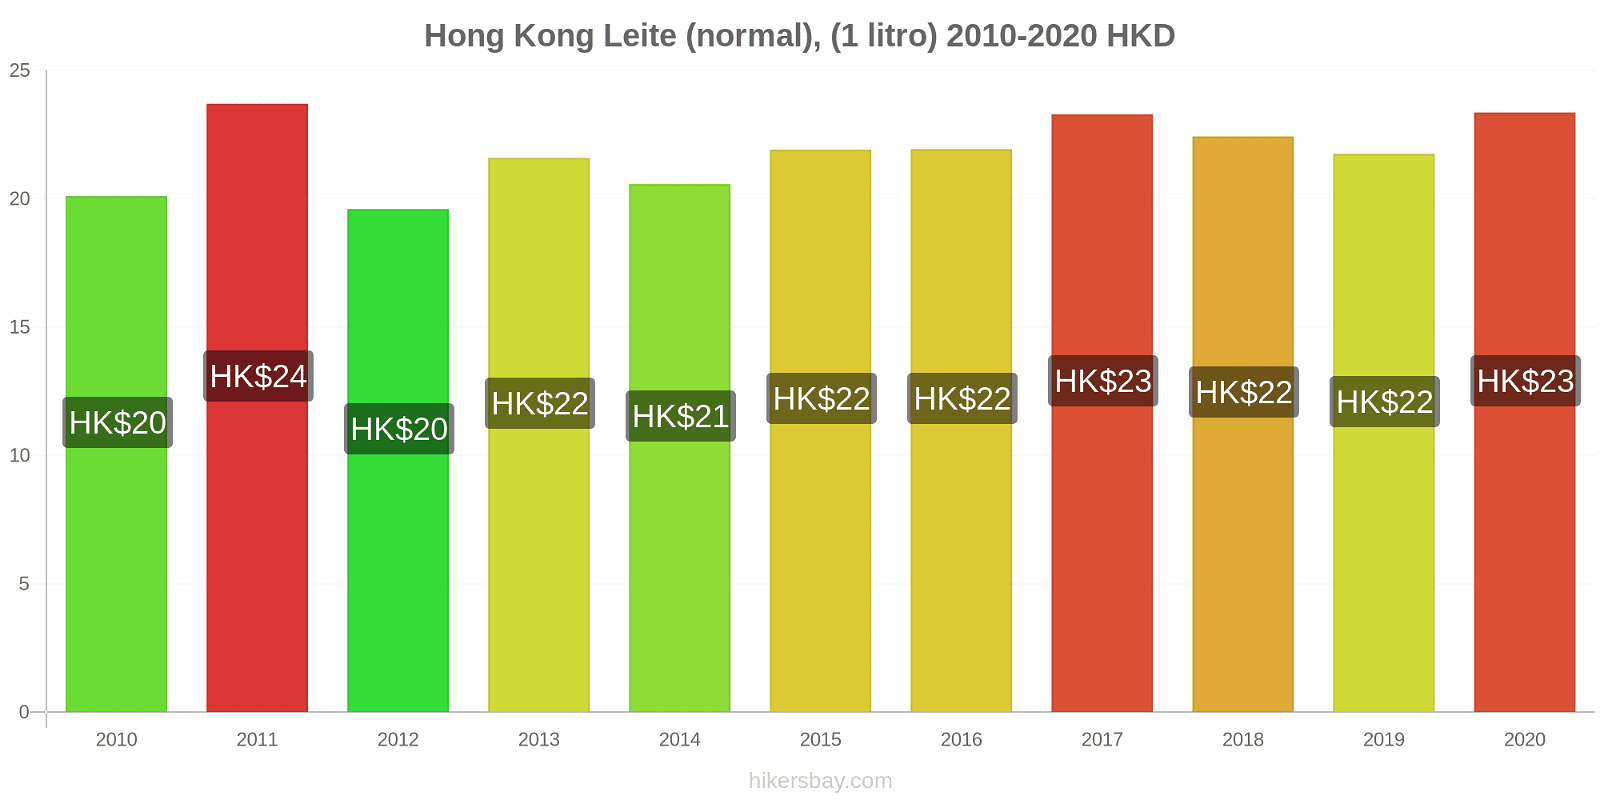 Hong Kong variação de preço (Regular), leite (1 litro) hikersbay.com